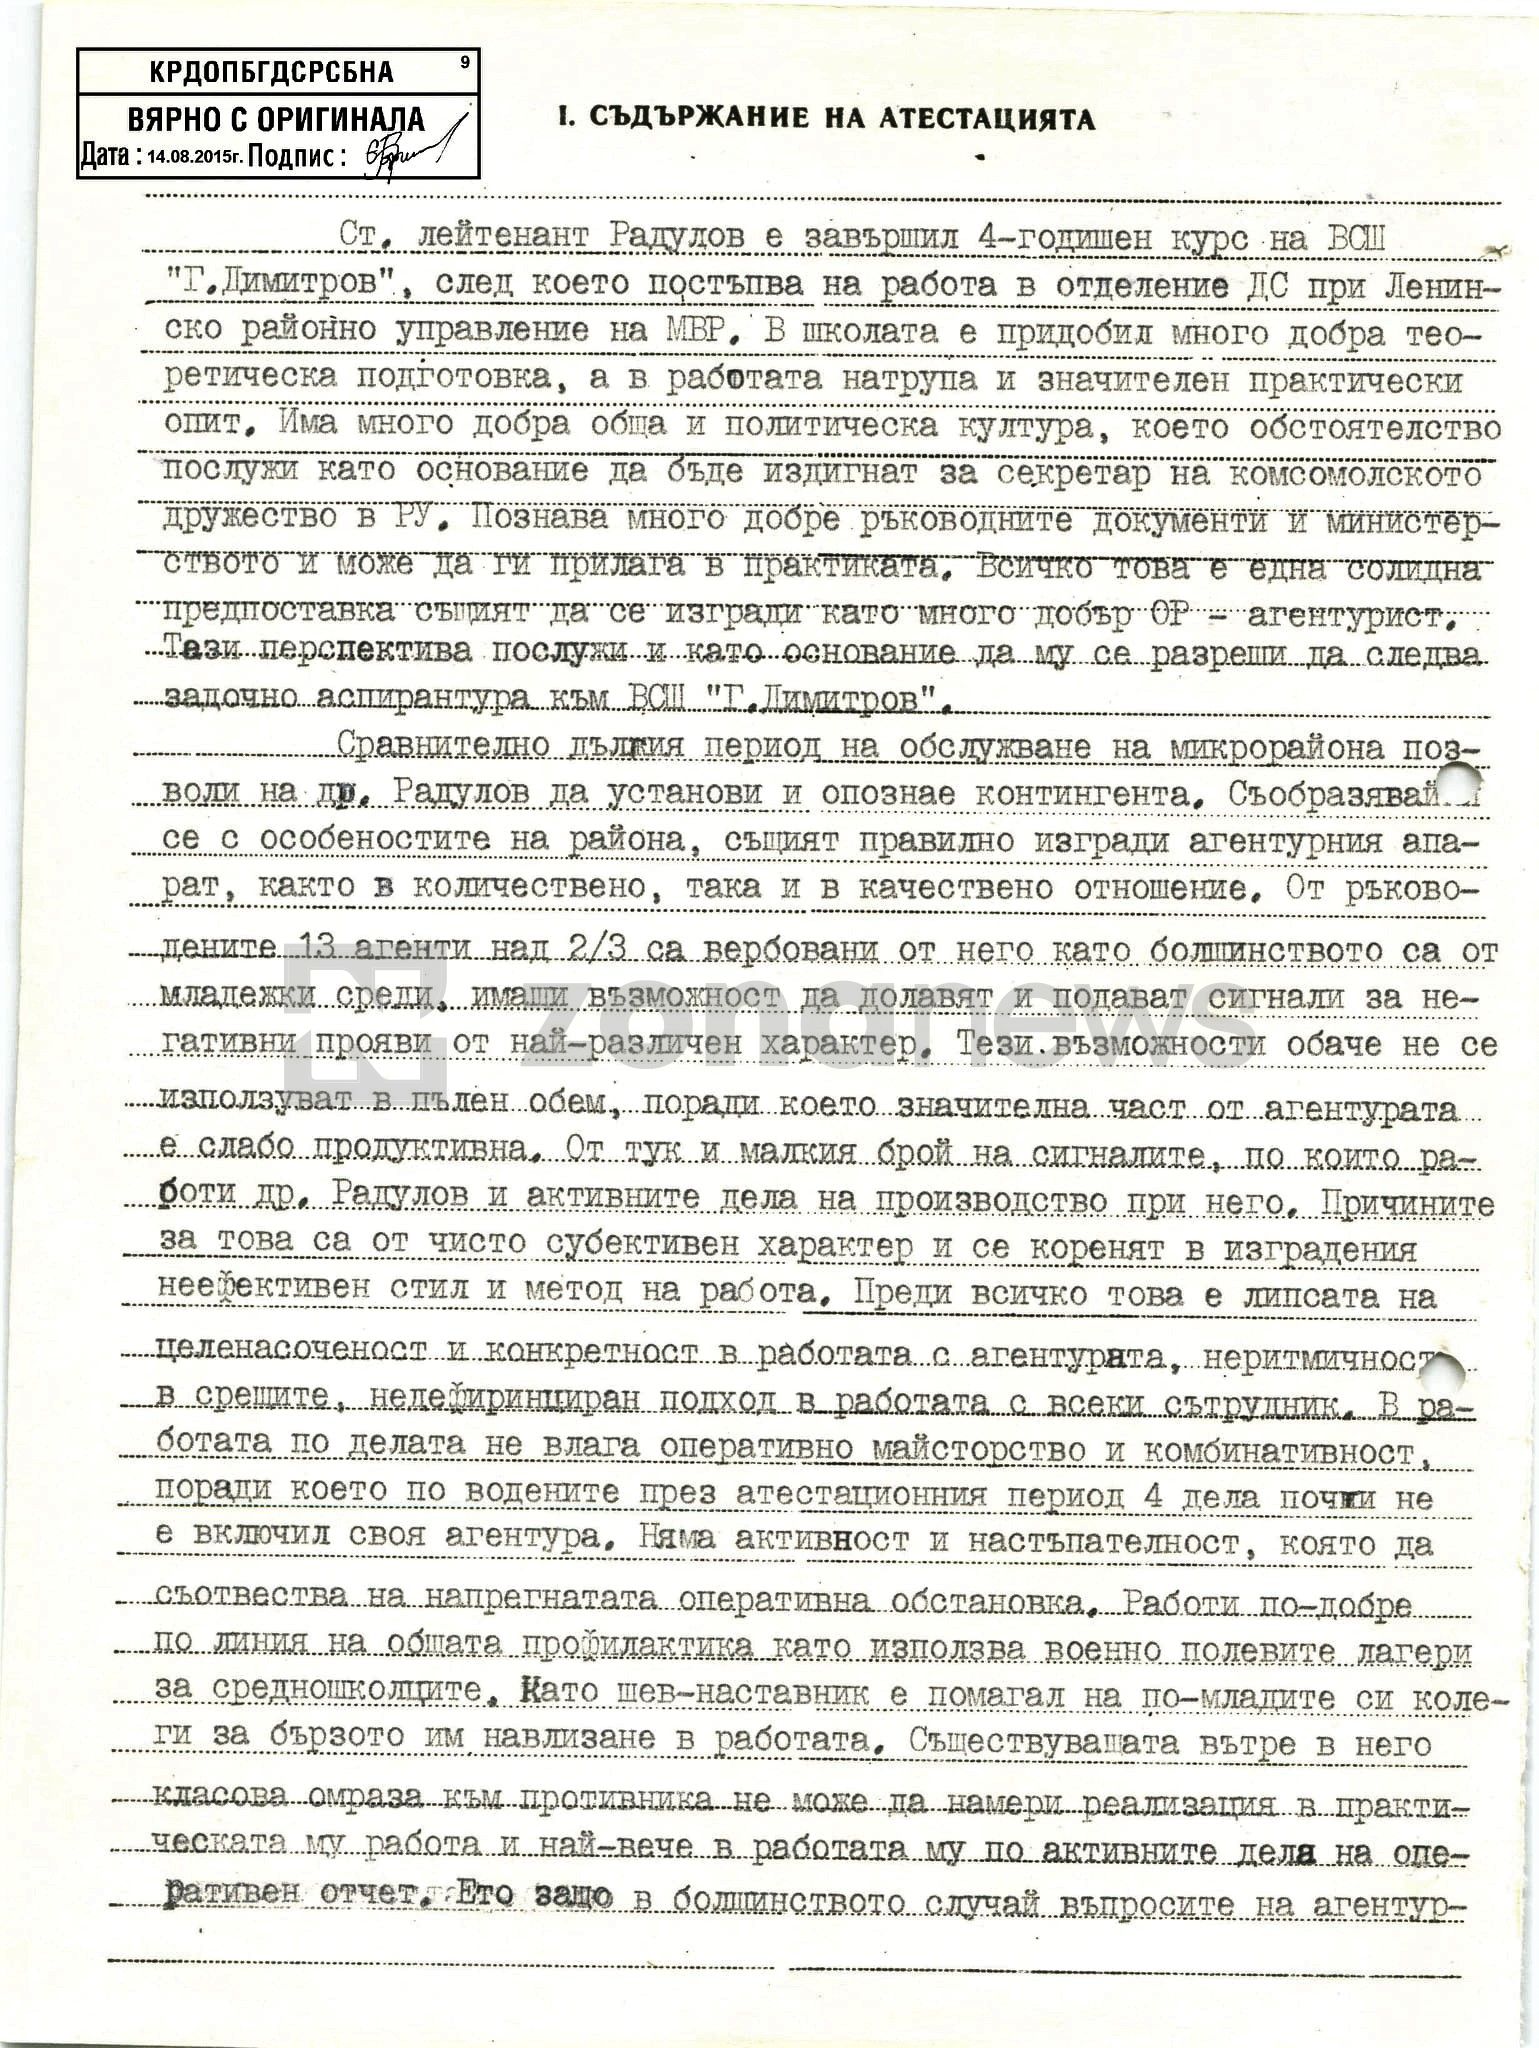 Документи от личното кадрово дело на Н.Радулов като офицер от ДС`````